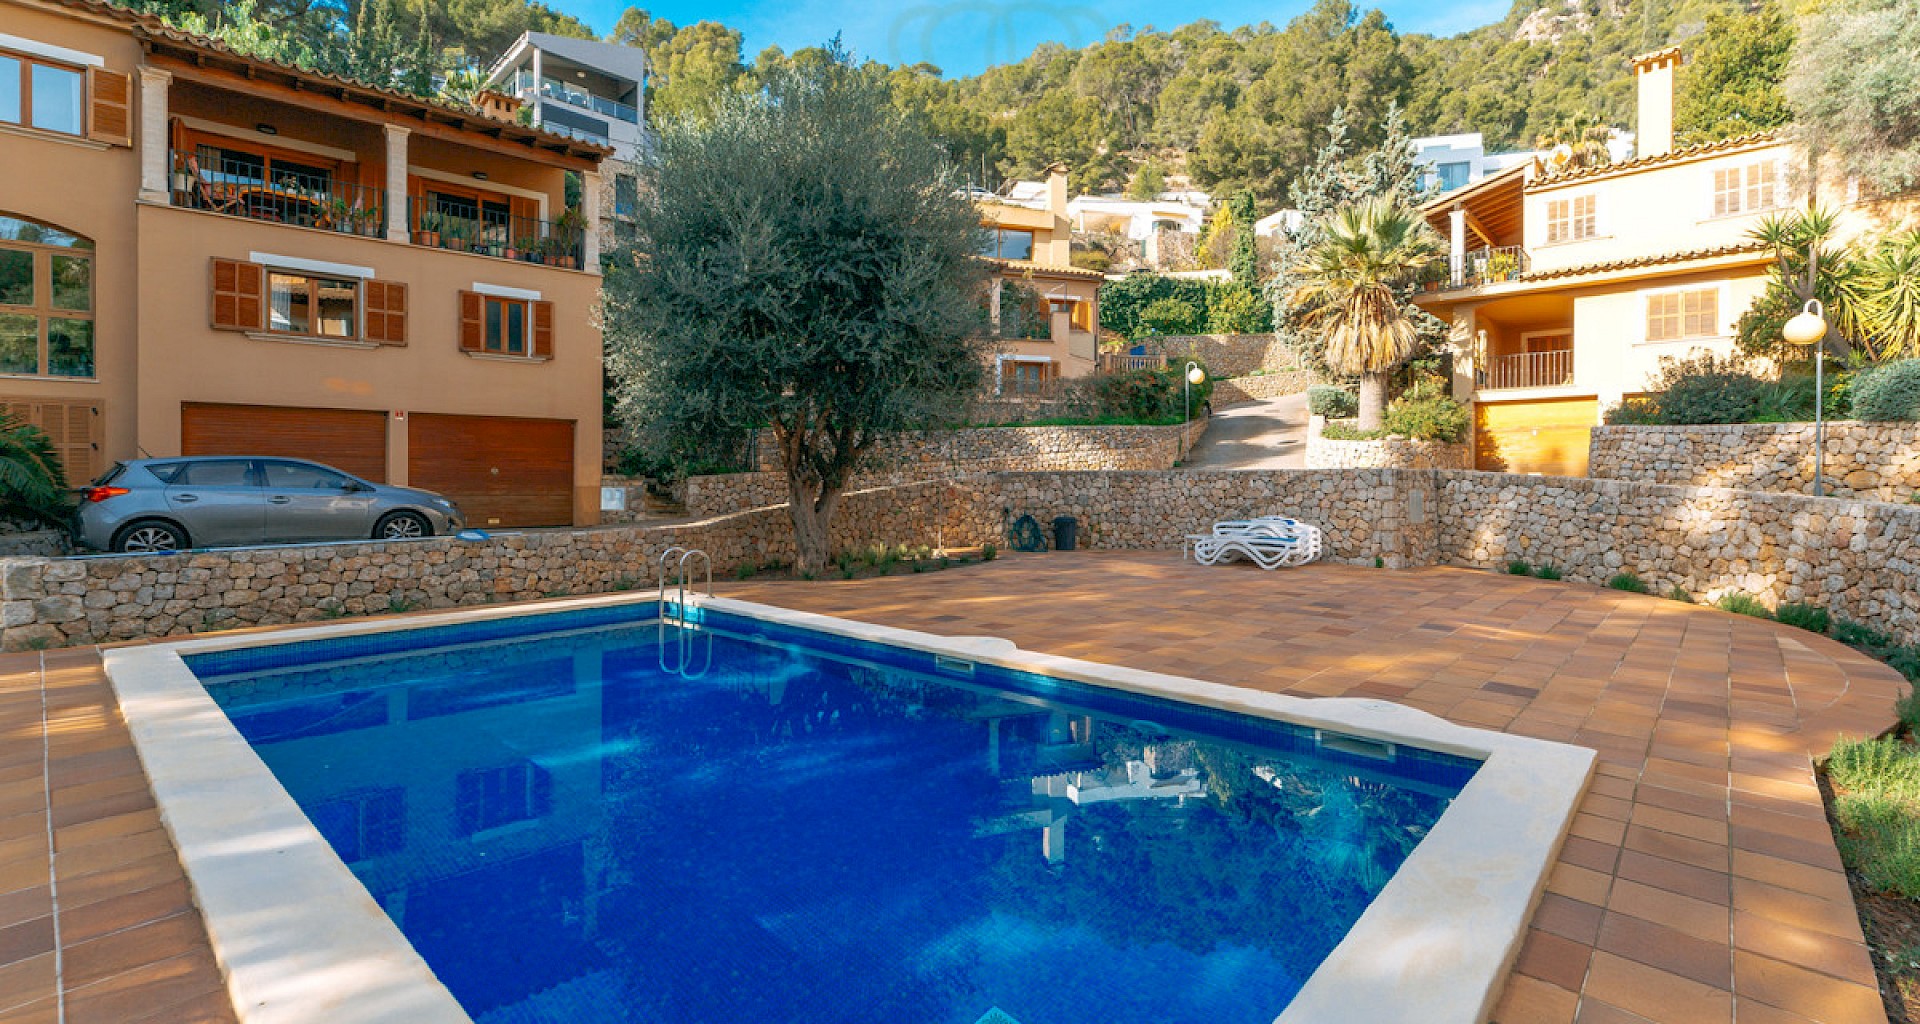 KROHN & LUEDEMANN Casa mediterránea en Génova con piscina comunitaria en un complejo privado bien cuidado Mediterranes Haus in Genova mit Gemeinschaftspool 36